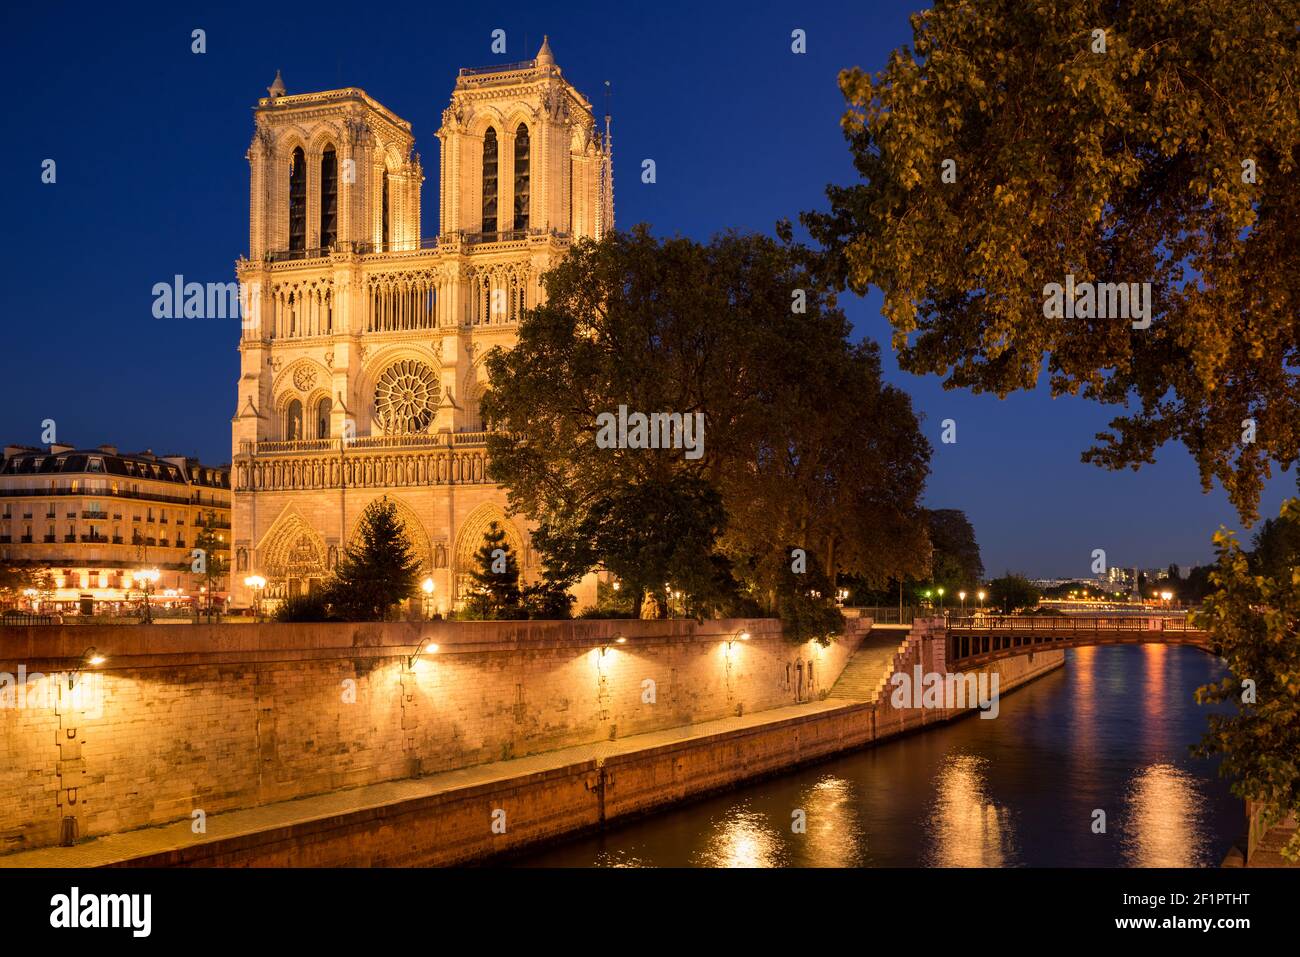 Cattedrale di Notre Dame de Paris illuminata al tramonto d'estate con le rive della Senna (patrimonio dell'umanità dell'UNESCO). Ile de la Cite, Parigi, Francia Foto Stock